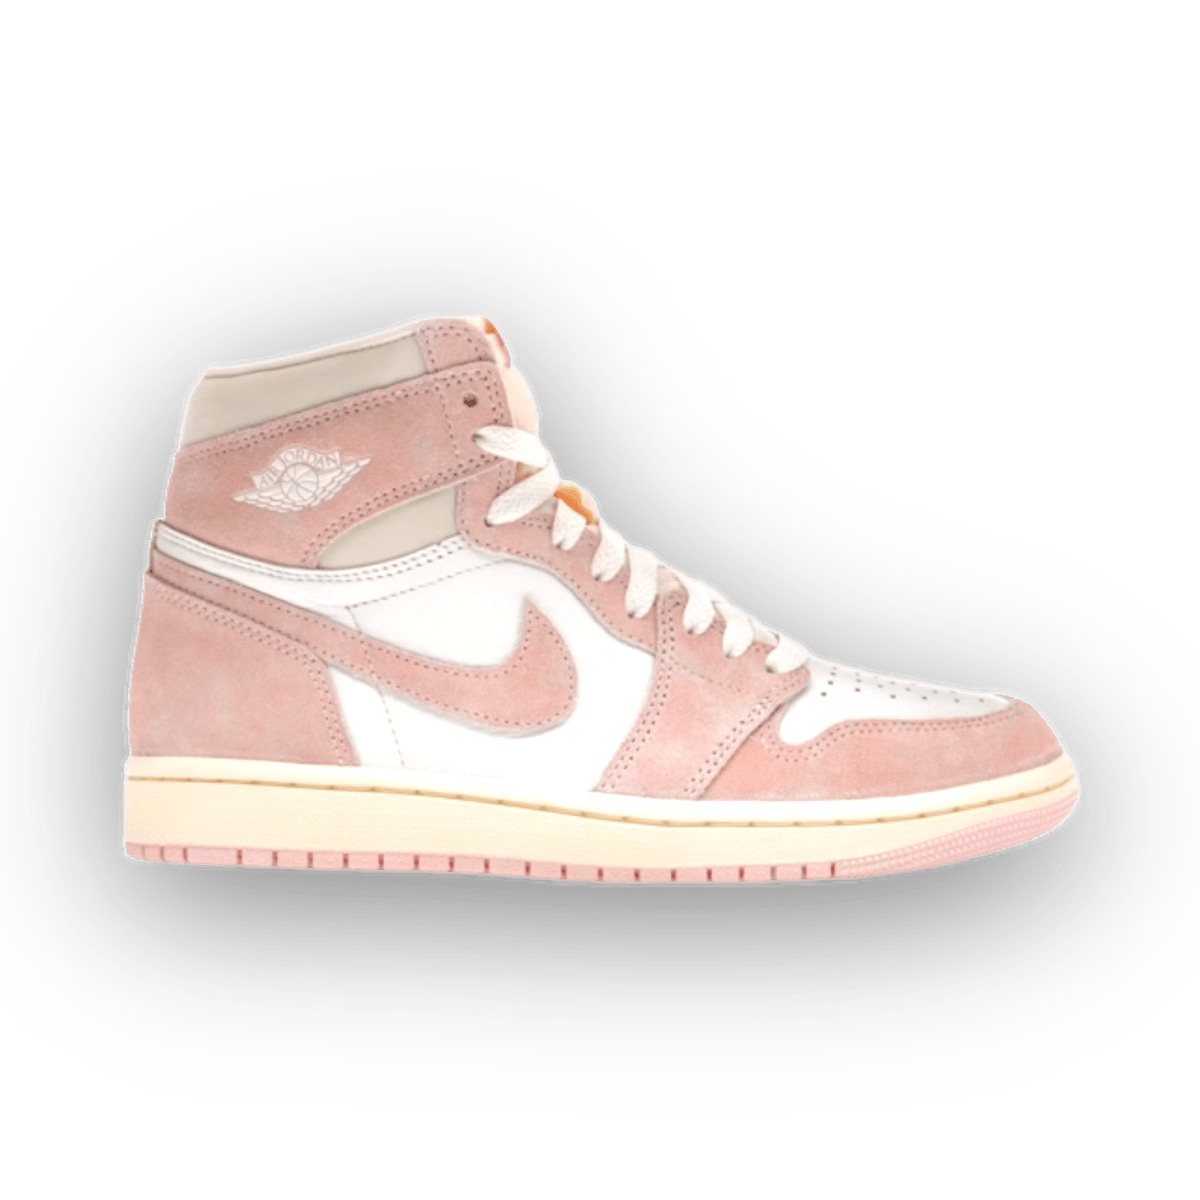 Jordan 1 Retro High OG Washed Pink - Women - High Sneaker - Jawns on Fire Sneakers & Streetwear